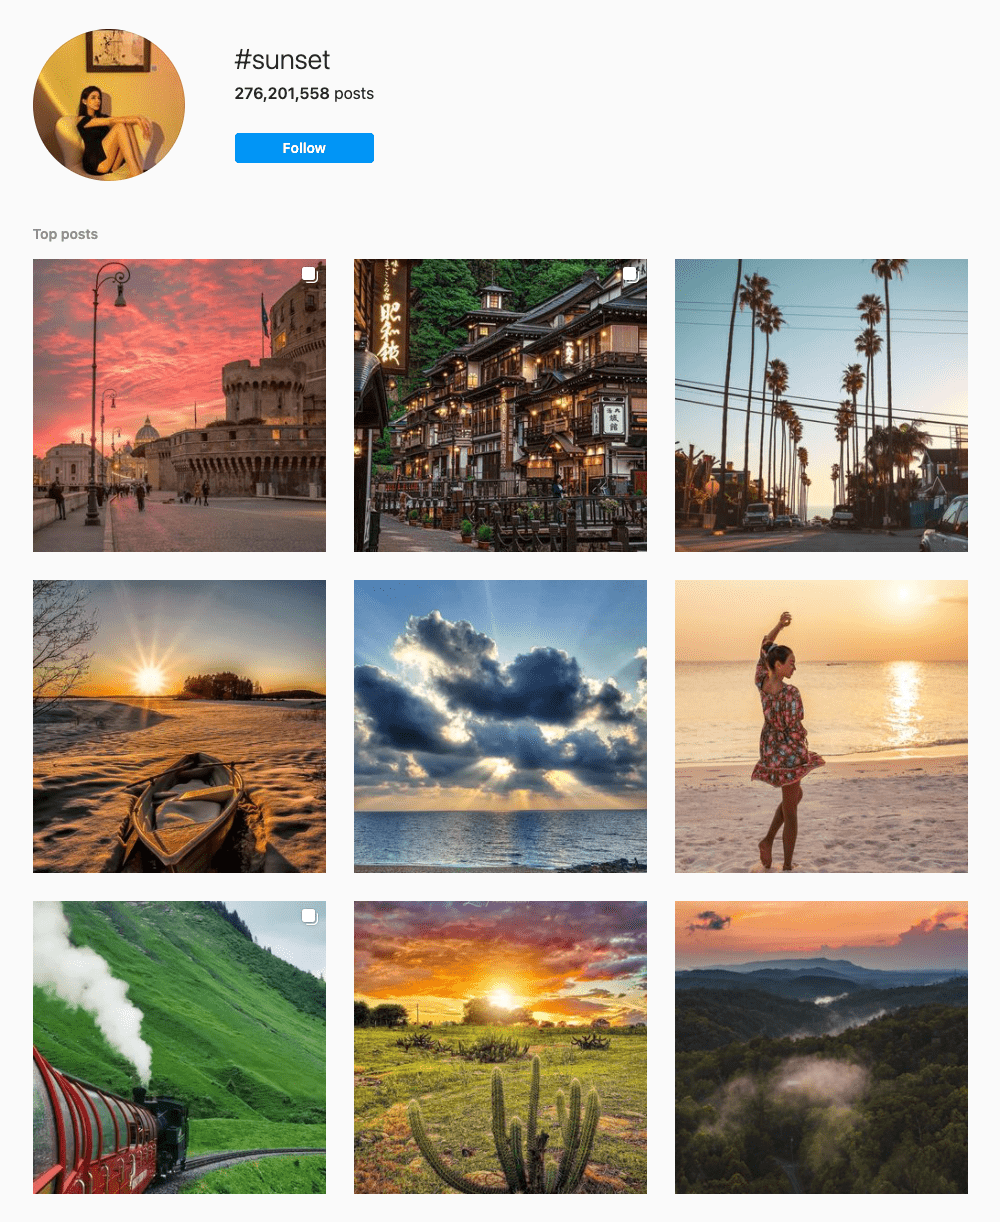 #sunset Hashtags for Instagram